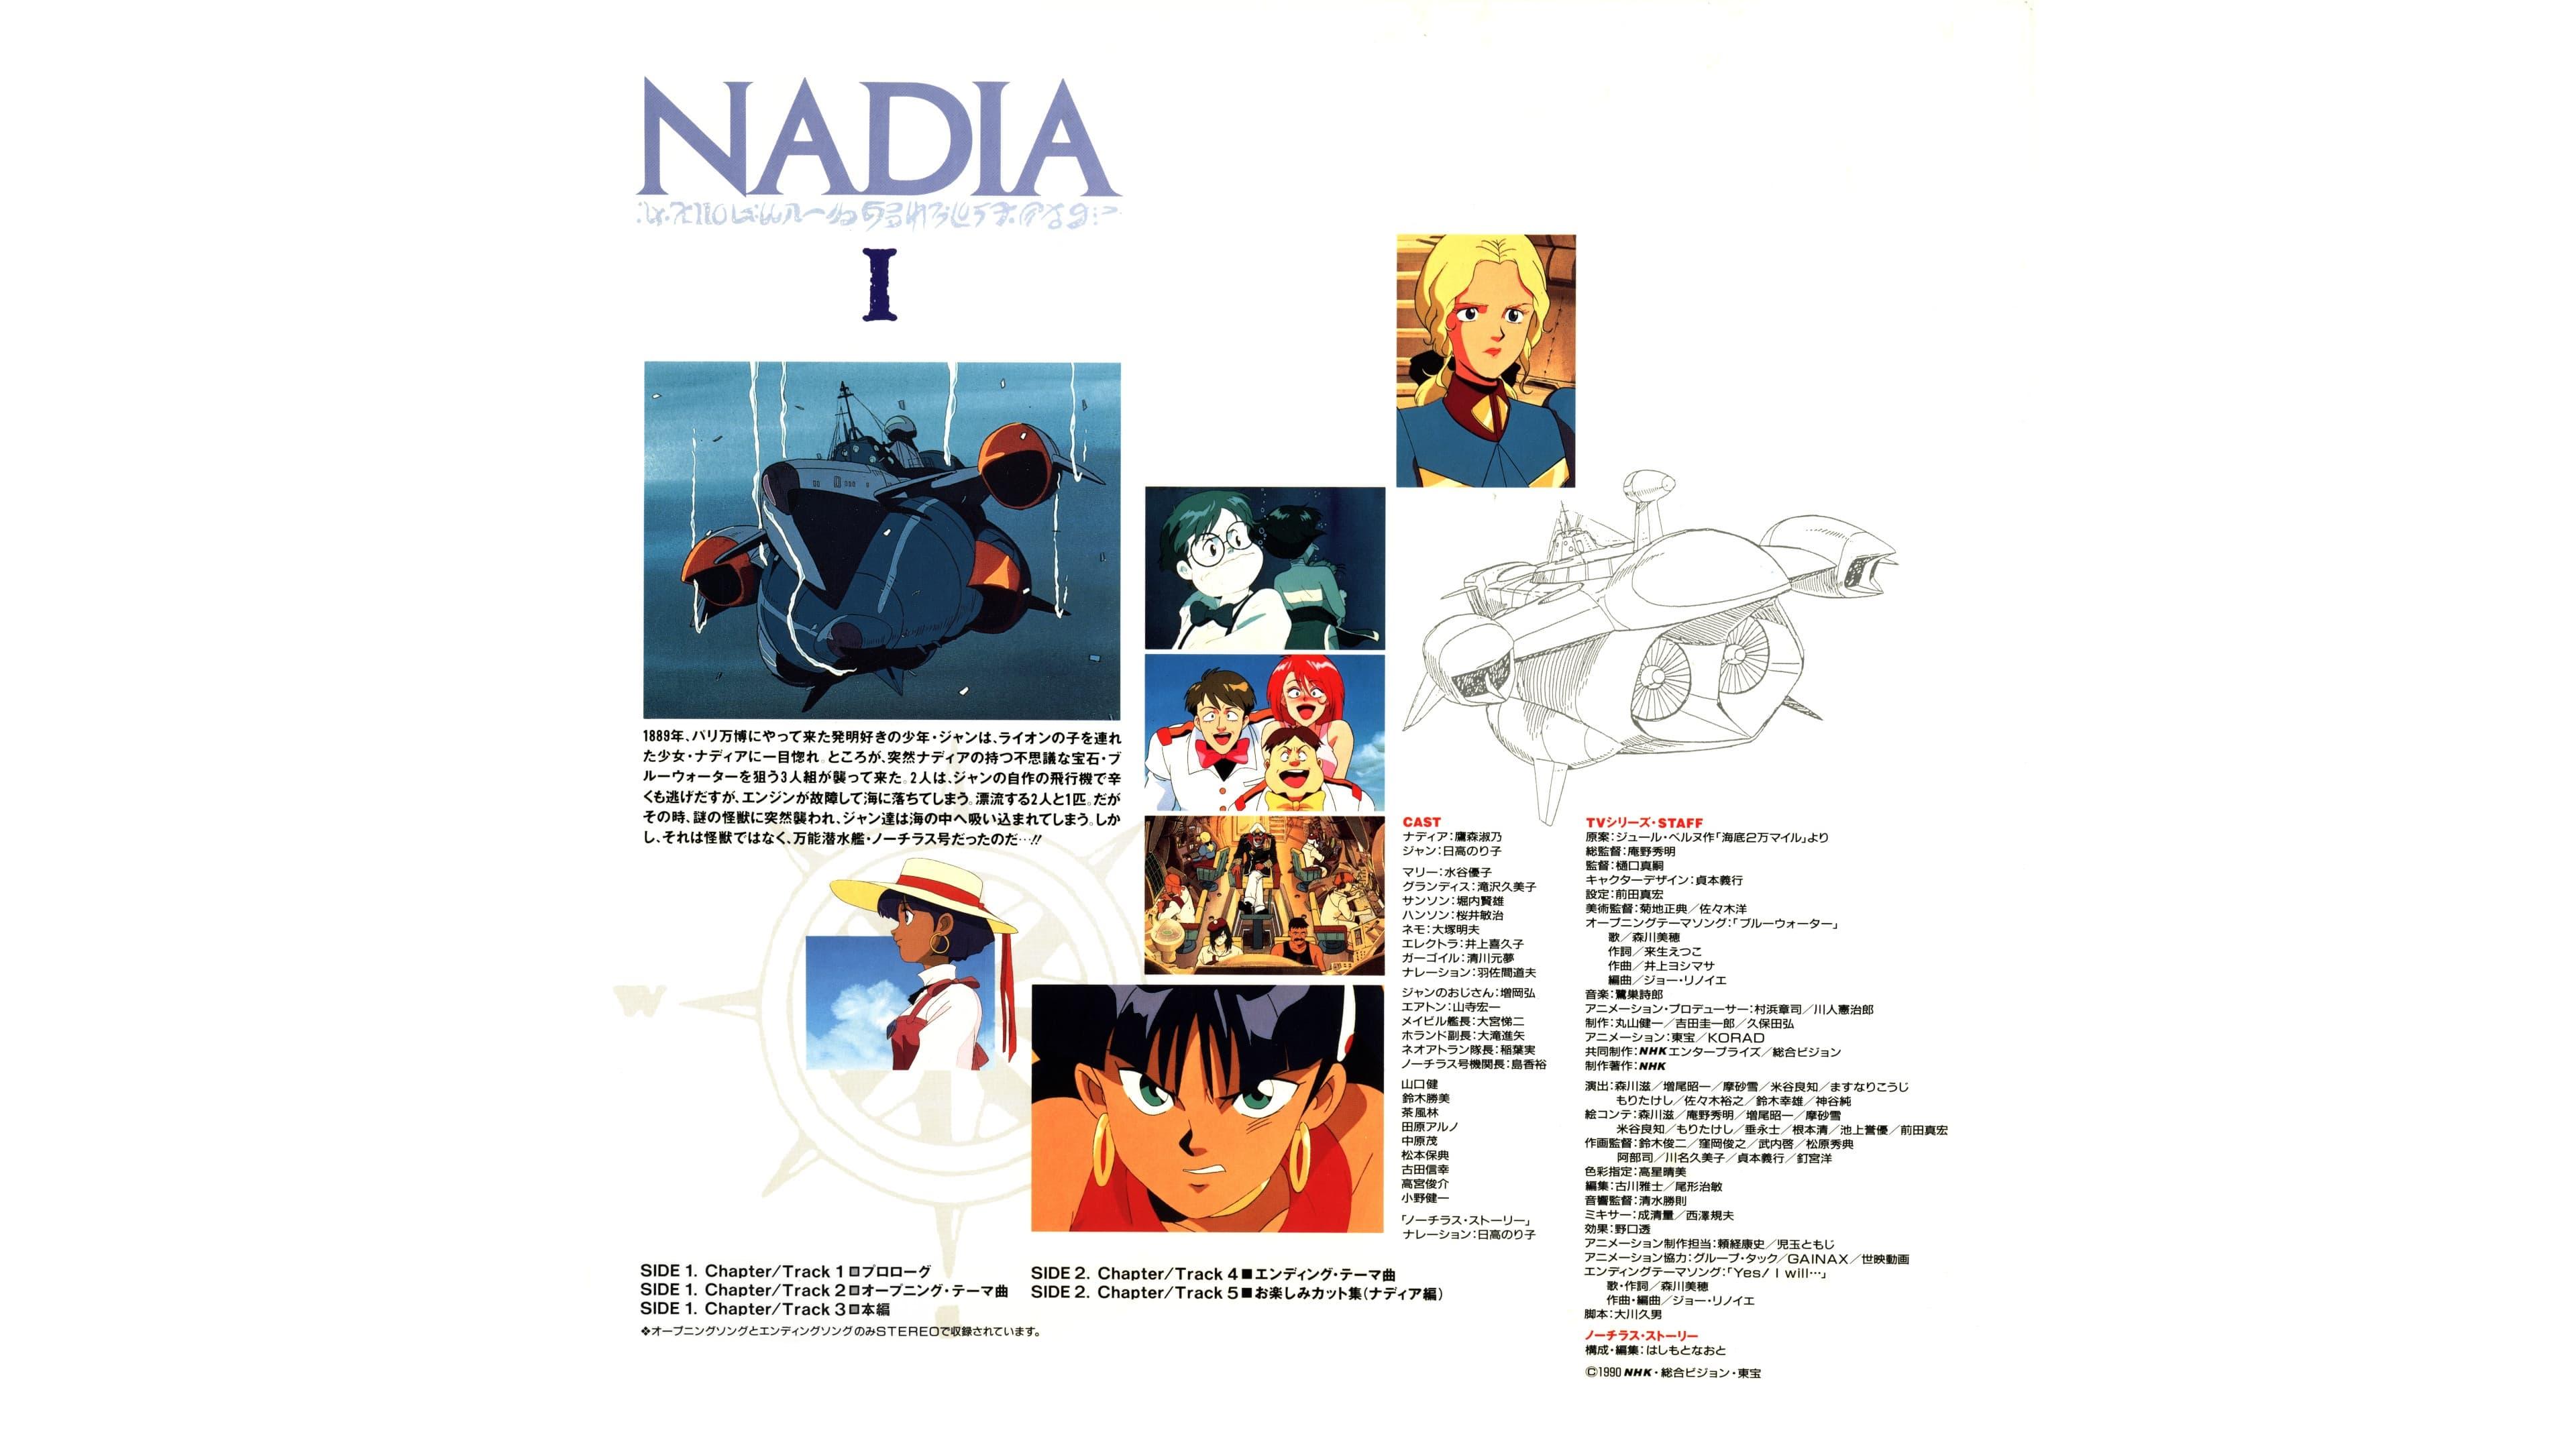 Nadia: The Secret of Blue Water - Nautilus Story I backdrop